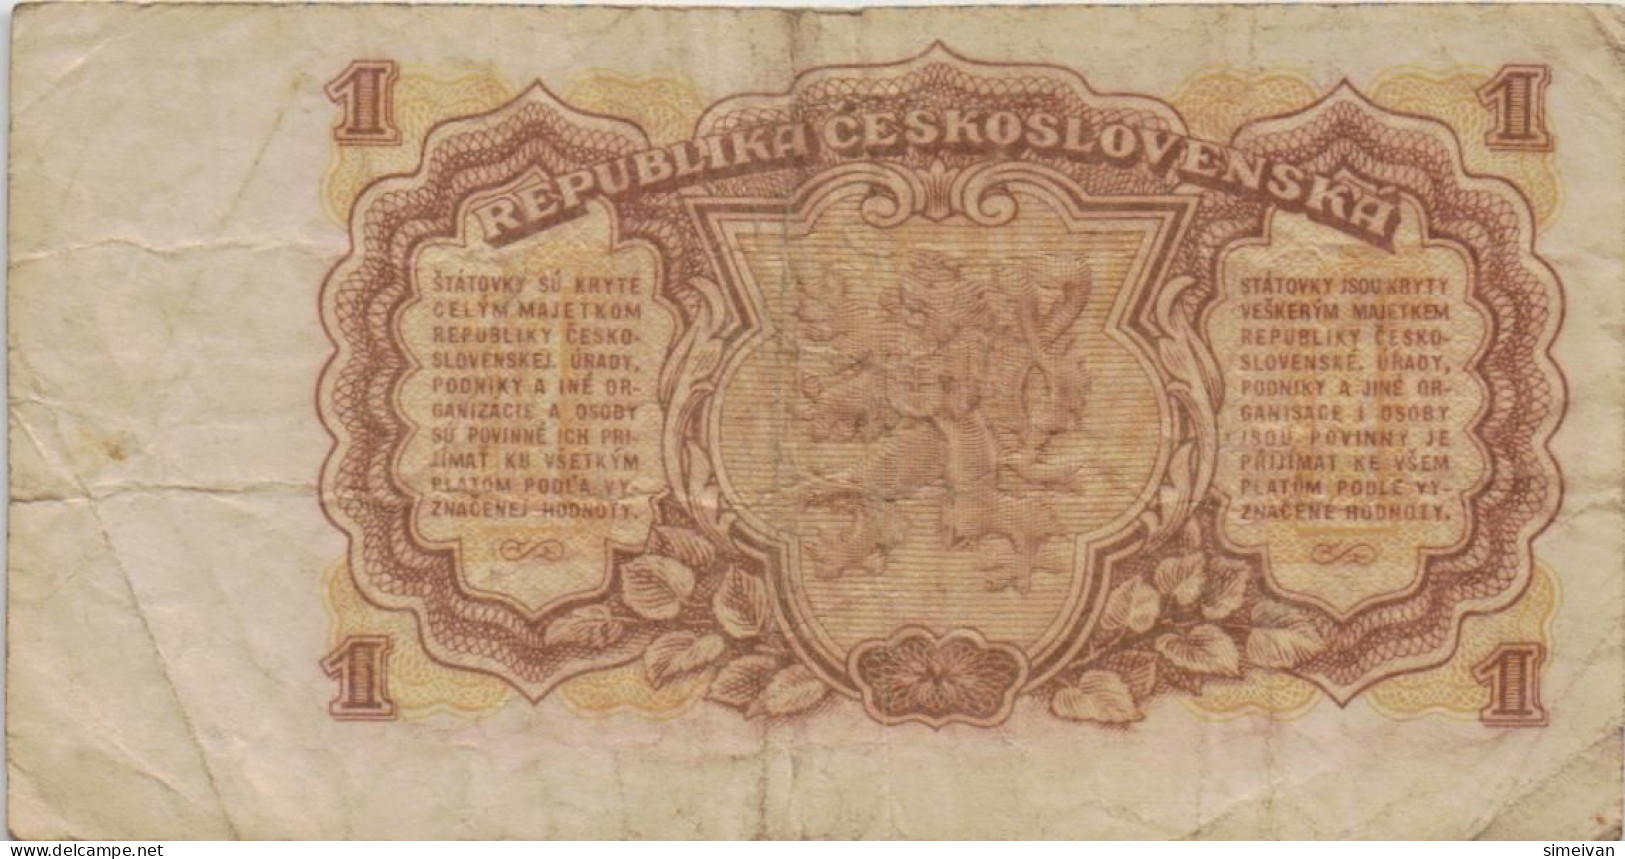 Czechoslovakia 1 Koruna 1953 P-78b Banknote Europe Currency Tchécoslovaquie Tschechoslowakei #5231 - Tschechoslowakei